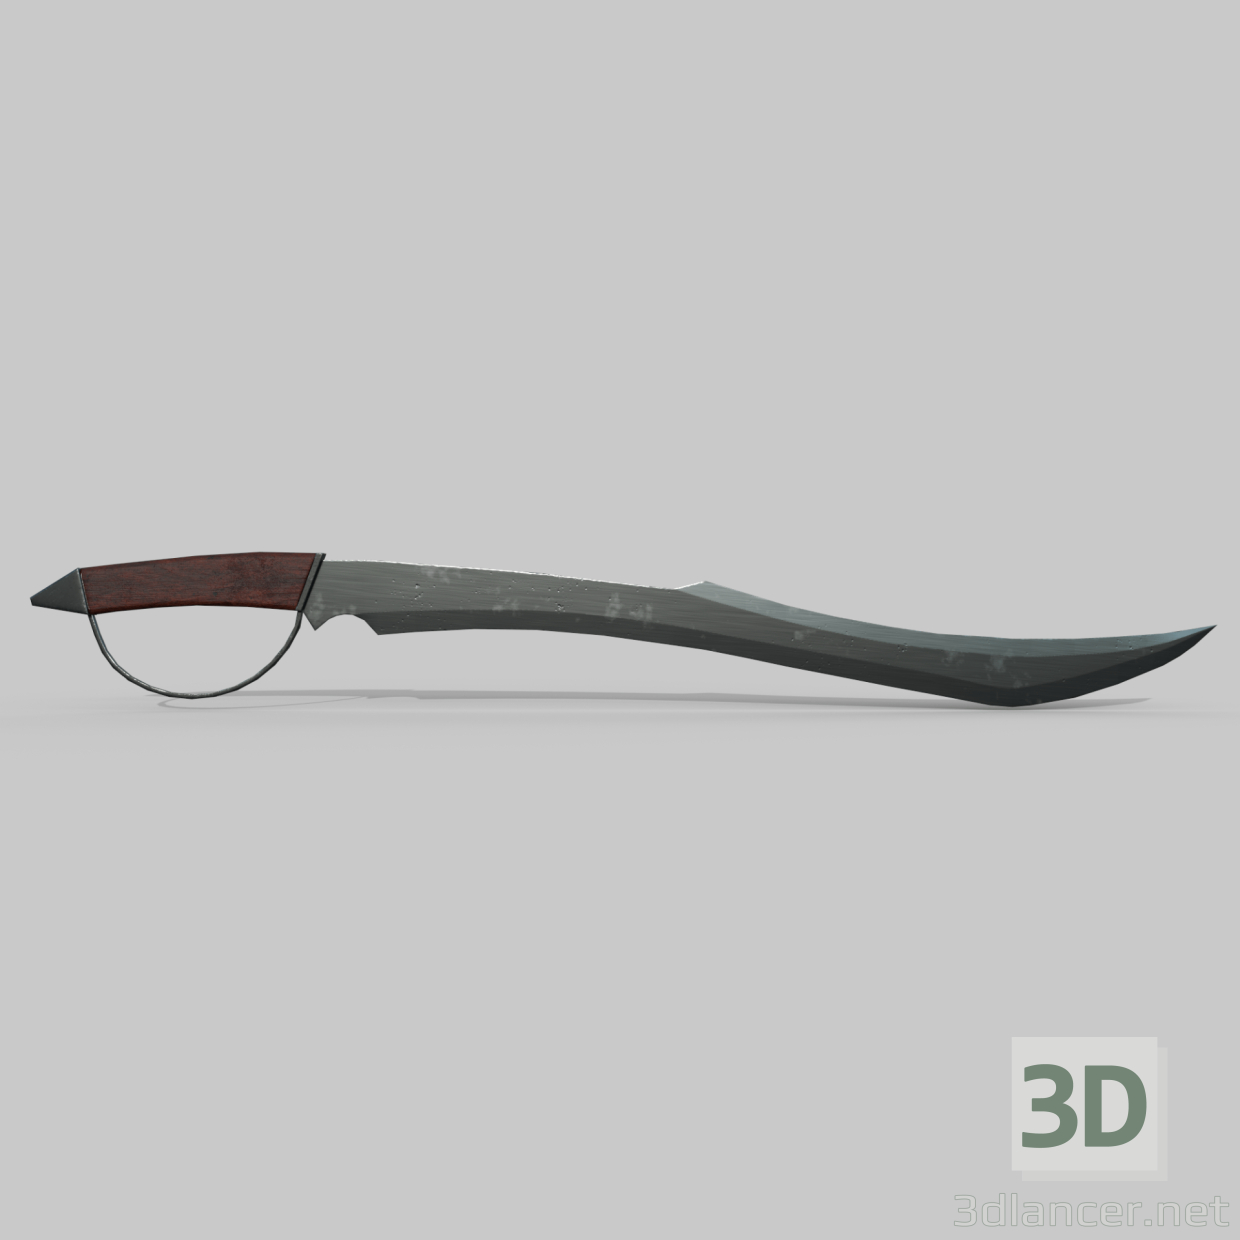 Piratensäbel 3D-Modell kaufen - Rendern